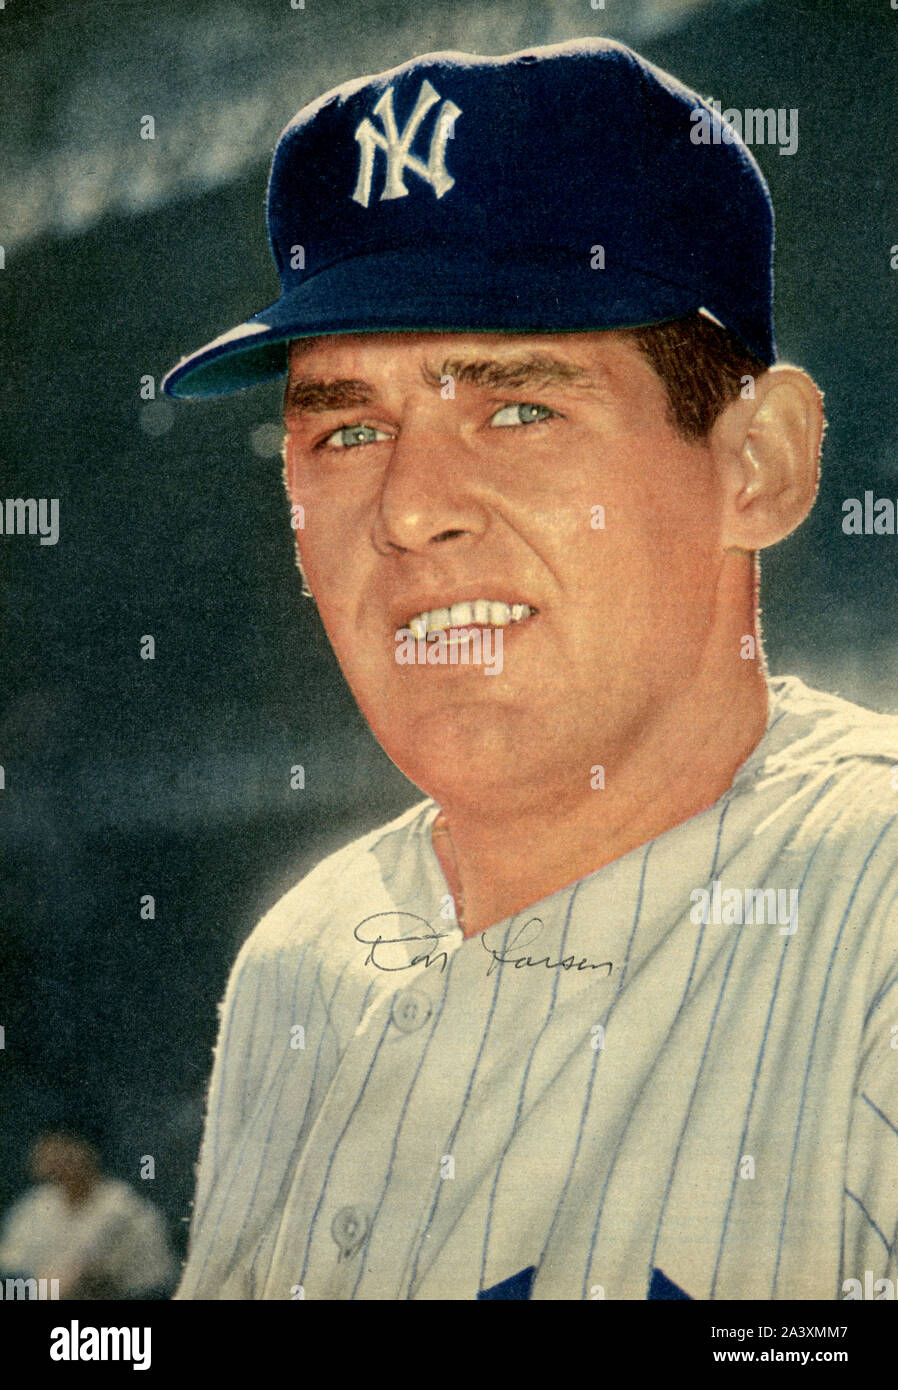 Classic 1950s Era autographierte Magazin Foto von Star player Don Larsen mit den New York Yankees. Larsen ist die einzige Hauptligakrug ein NO- hitter in der World Series gegen die Brooklyn Schwindler 1956 zu werfen. Stockfoto